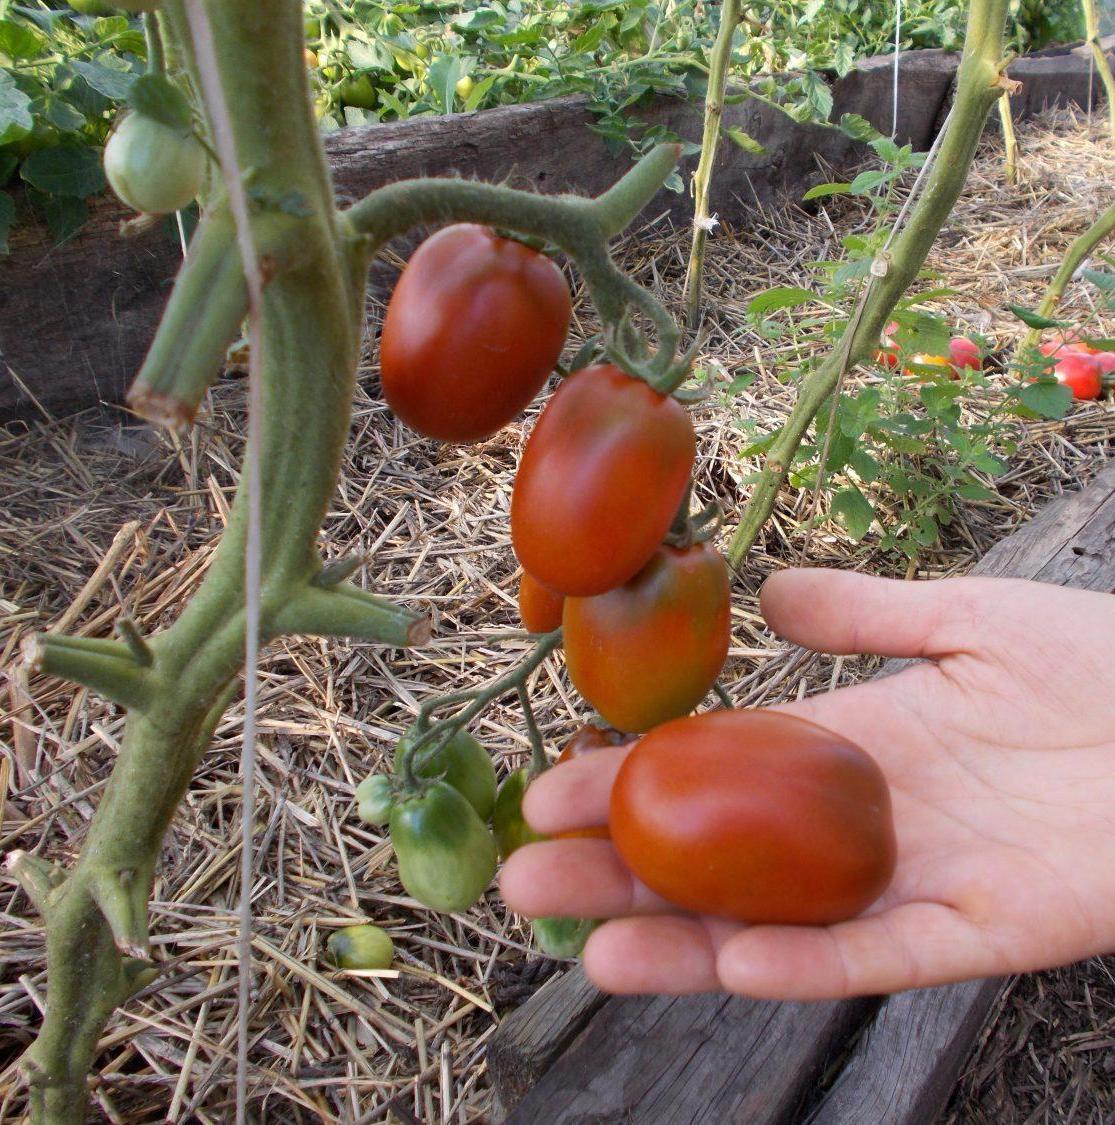 томаты черный де барао фото